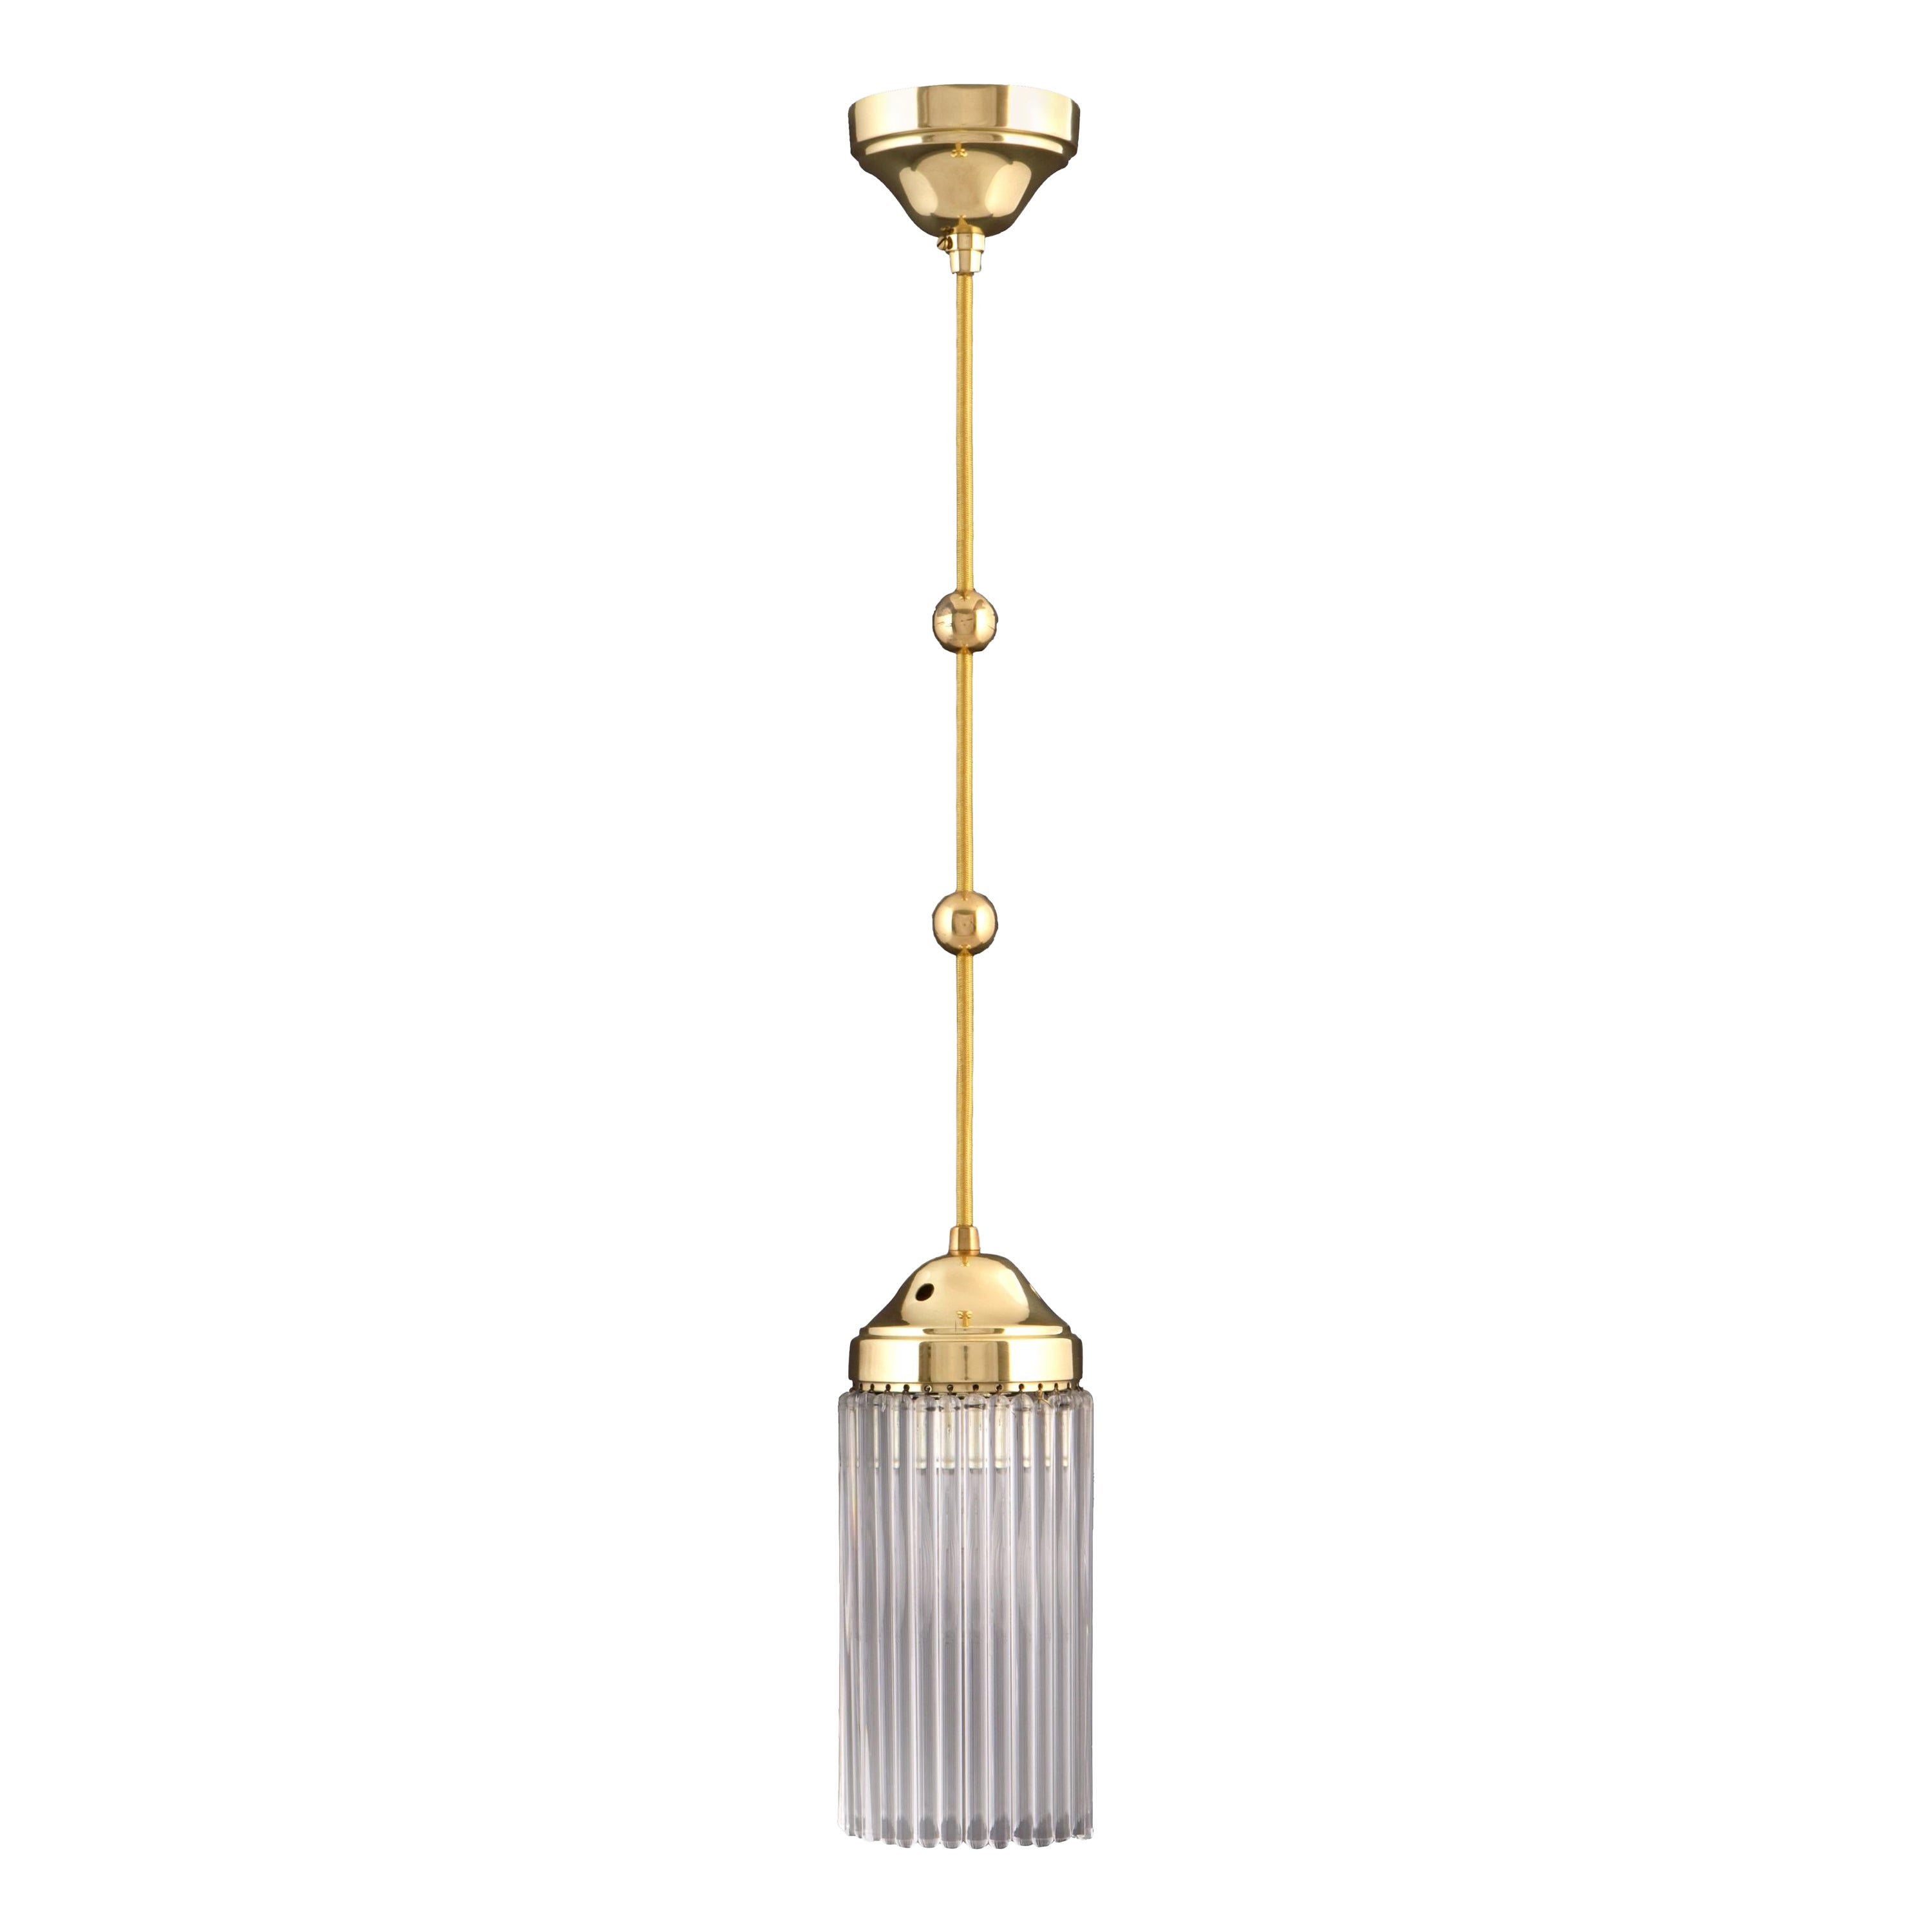 Jugendstil  Art Deco Brass and Glass Single Pendant Chandelier, Re-Edition